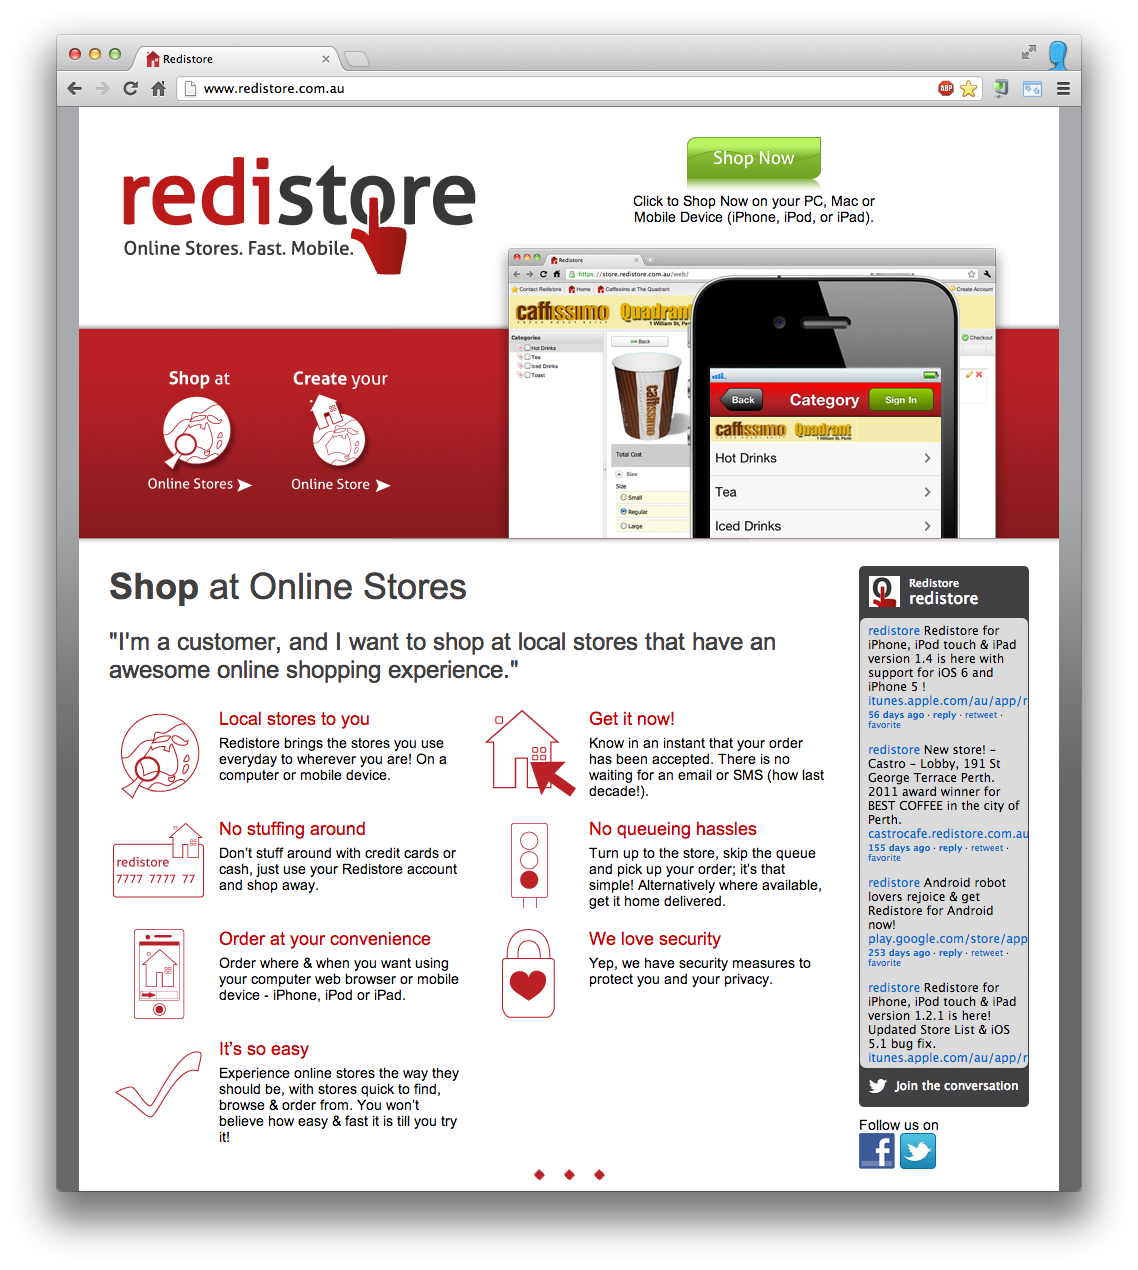 Redistore Web Site